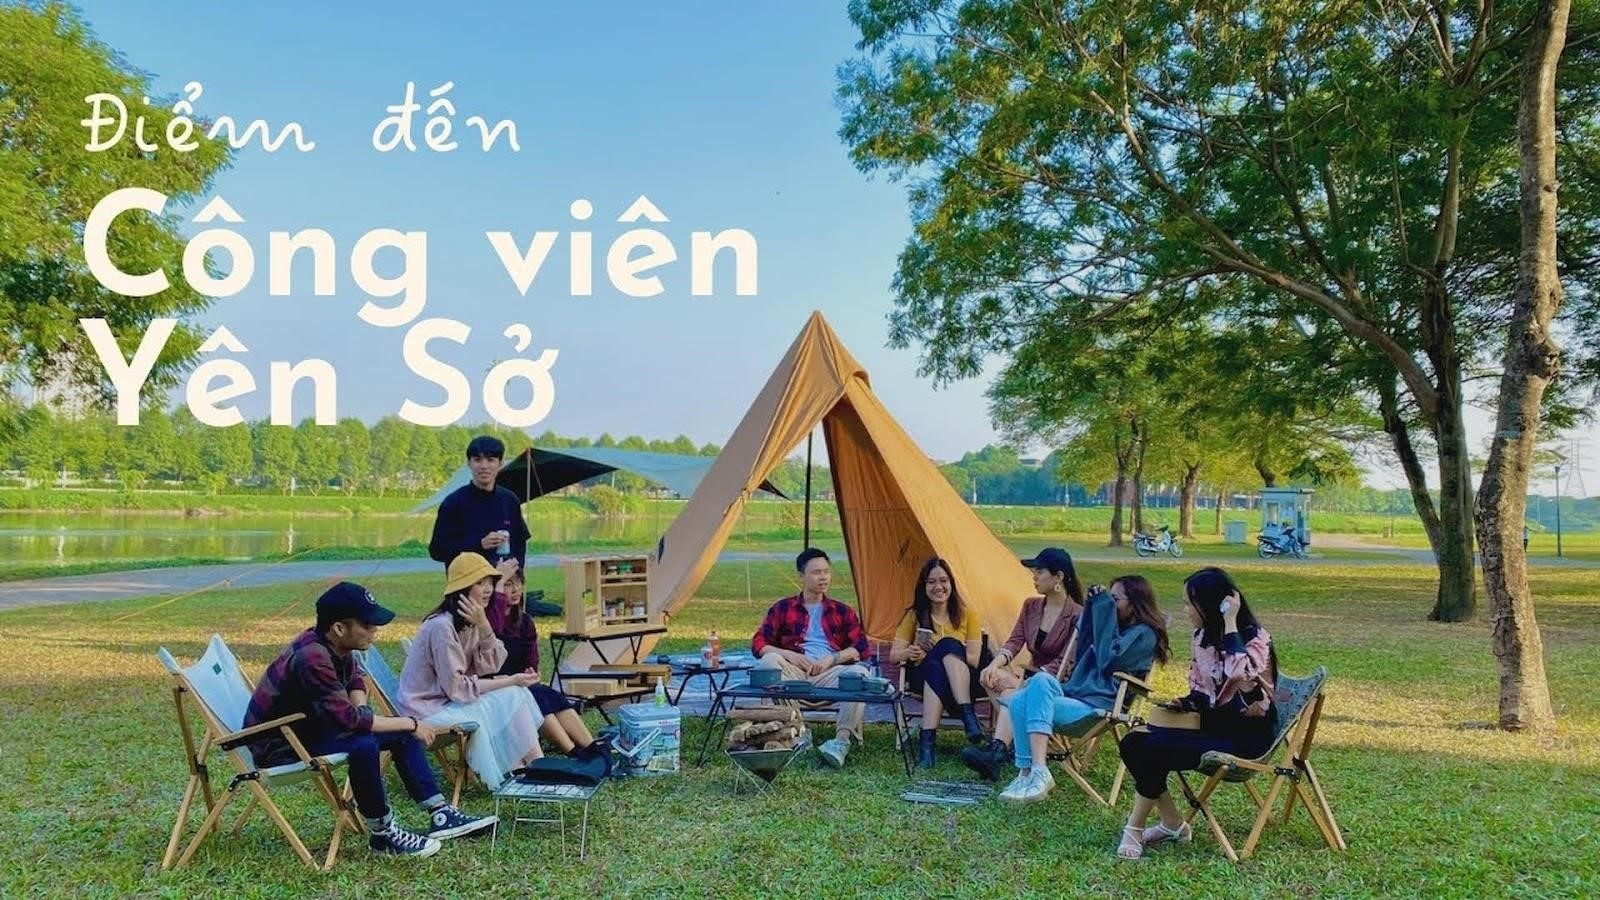 3. Công viên Yên Sở là một địa điểm du lịch tiết kiệm rất gần Hà Nội.